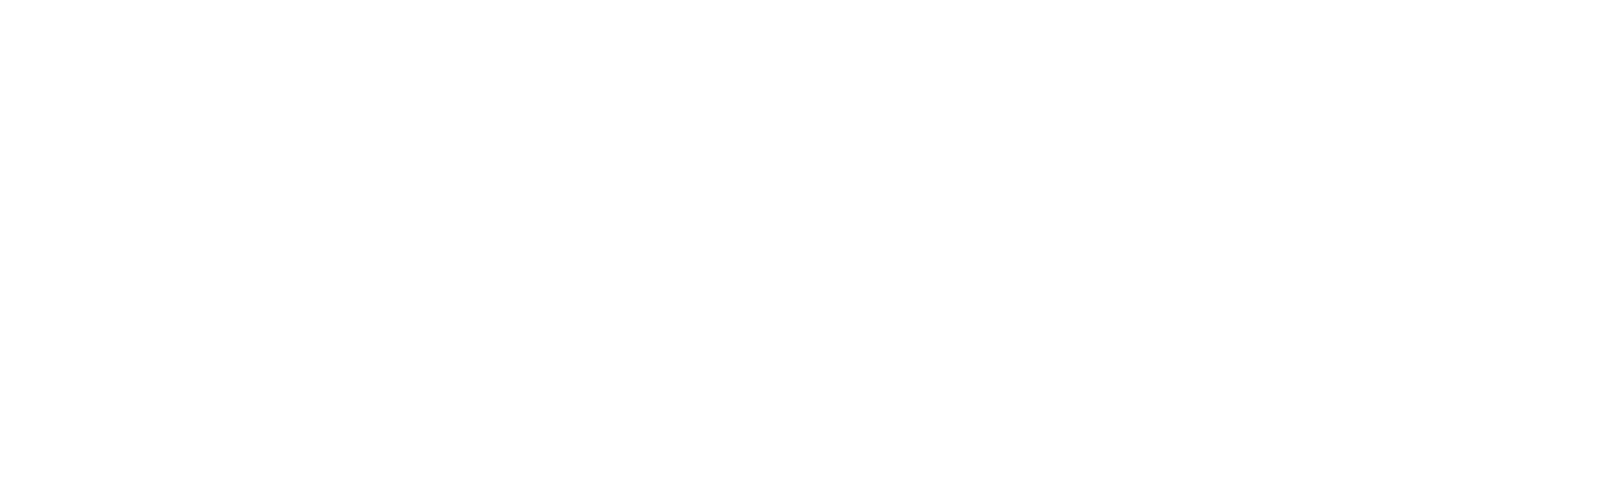 Wisetech Global